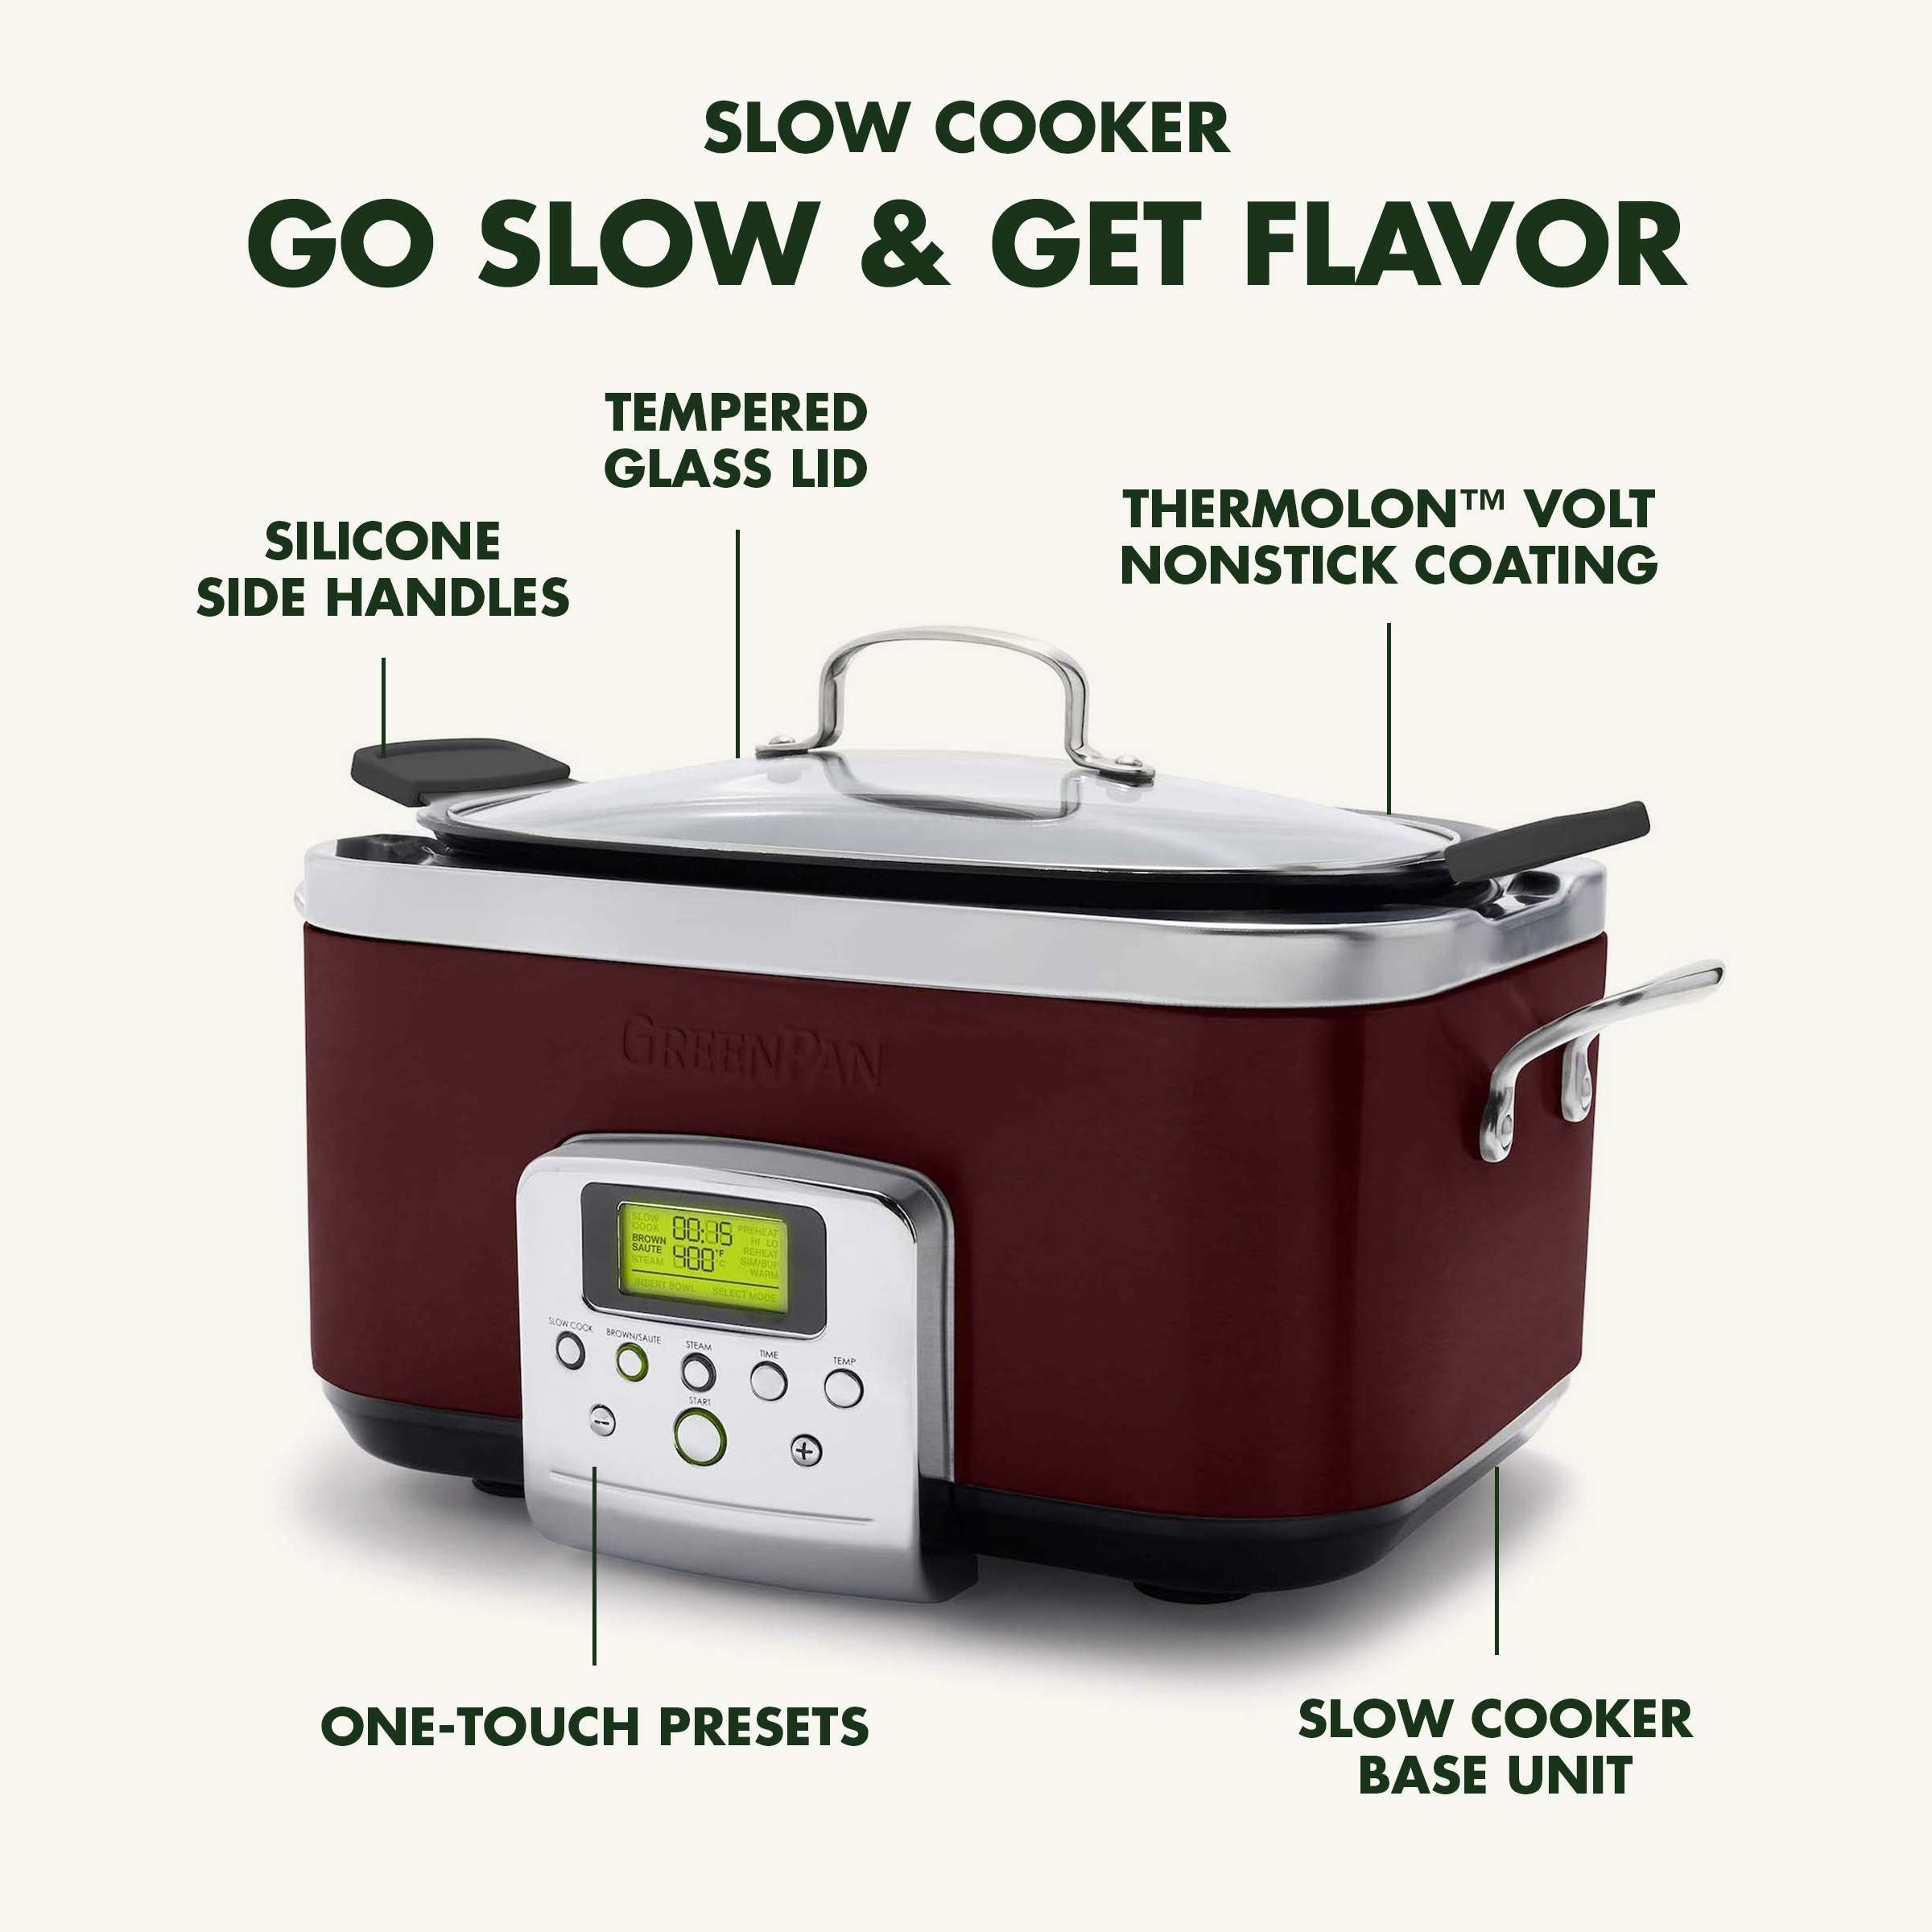 All Clad Slow Cooker: 6.5 qt. Crock Pot + Reviews